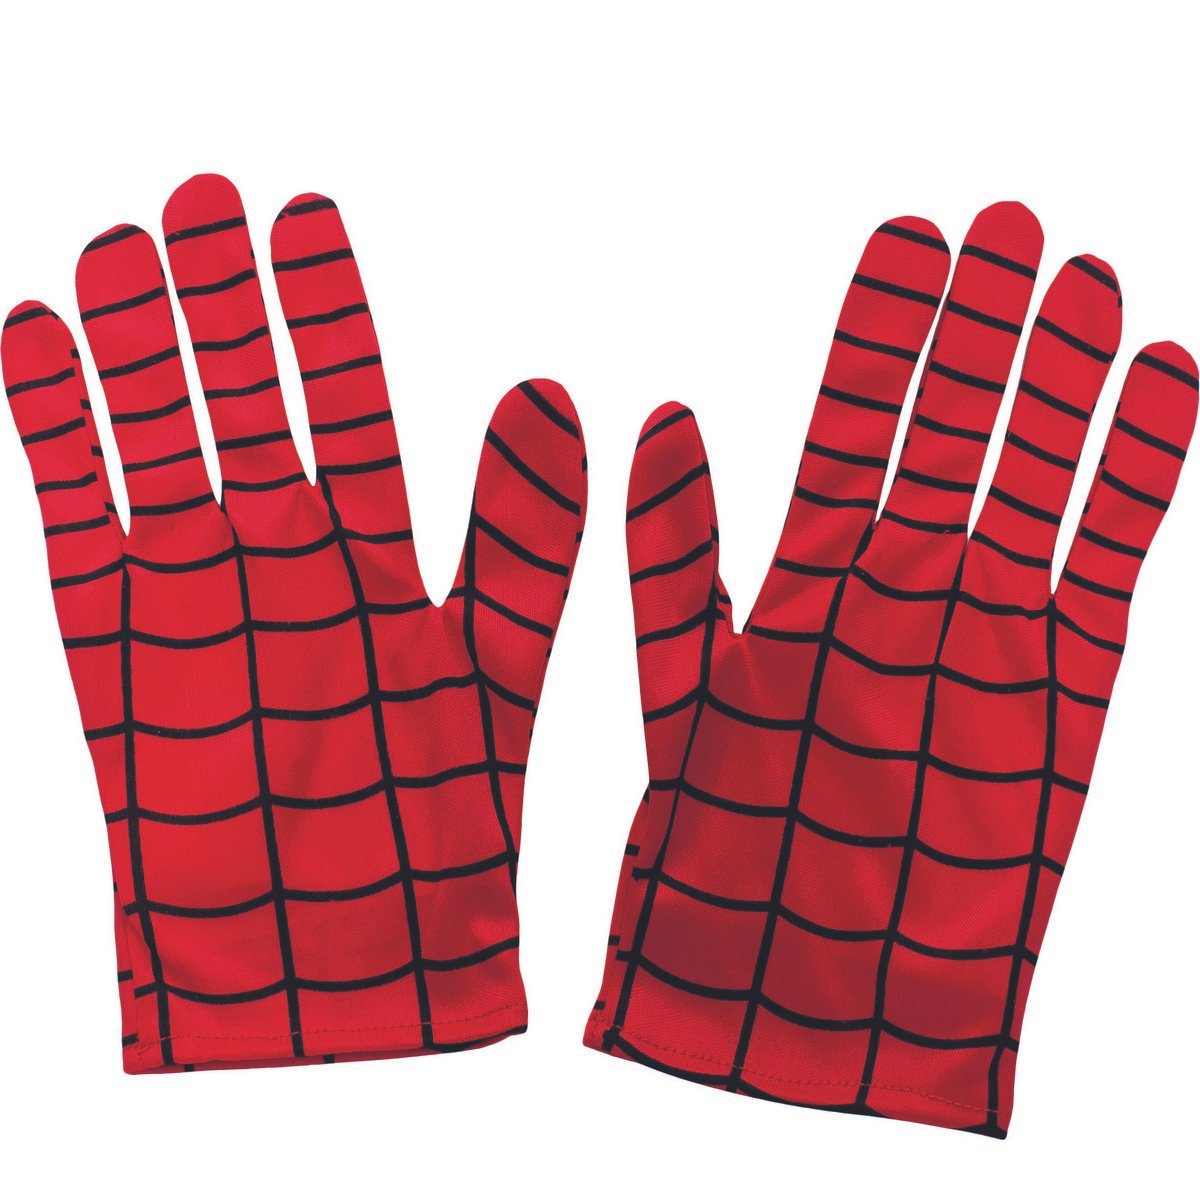 Gants Spider Man taille unique - La Grande Récré